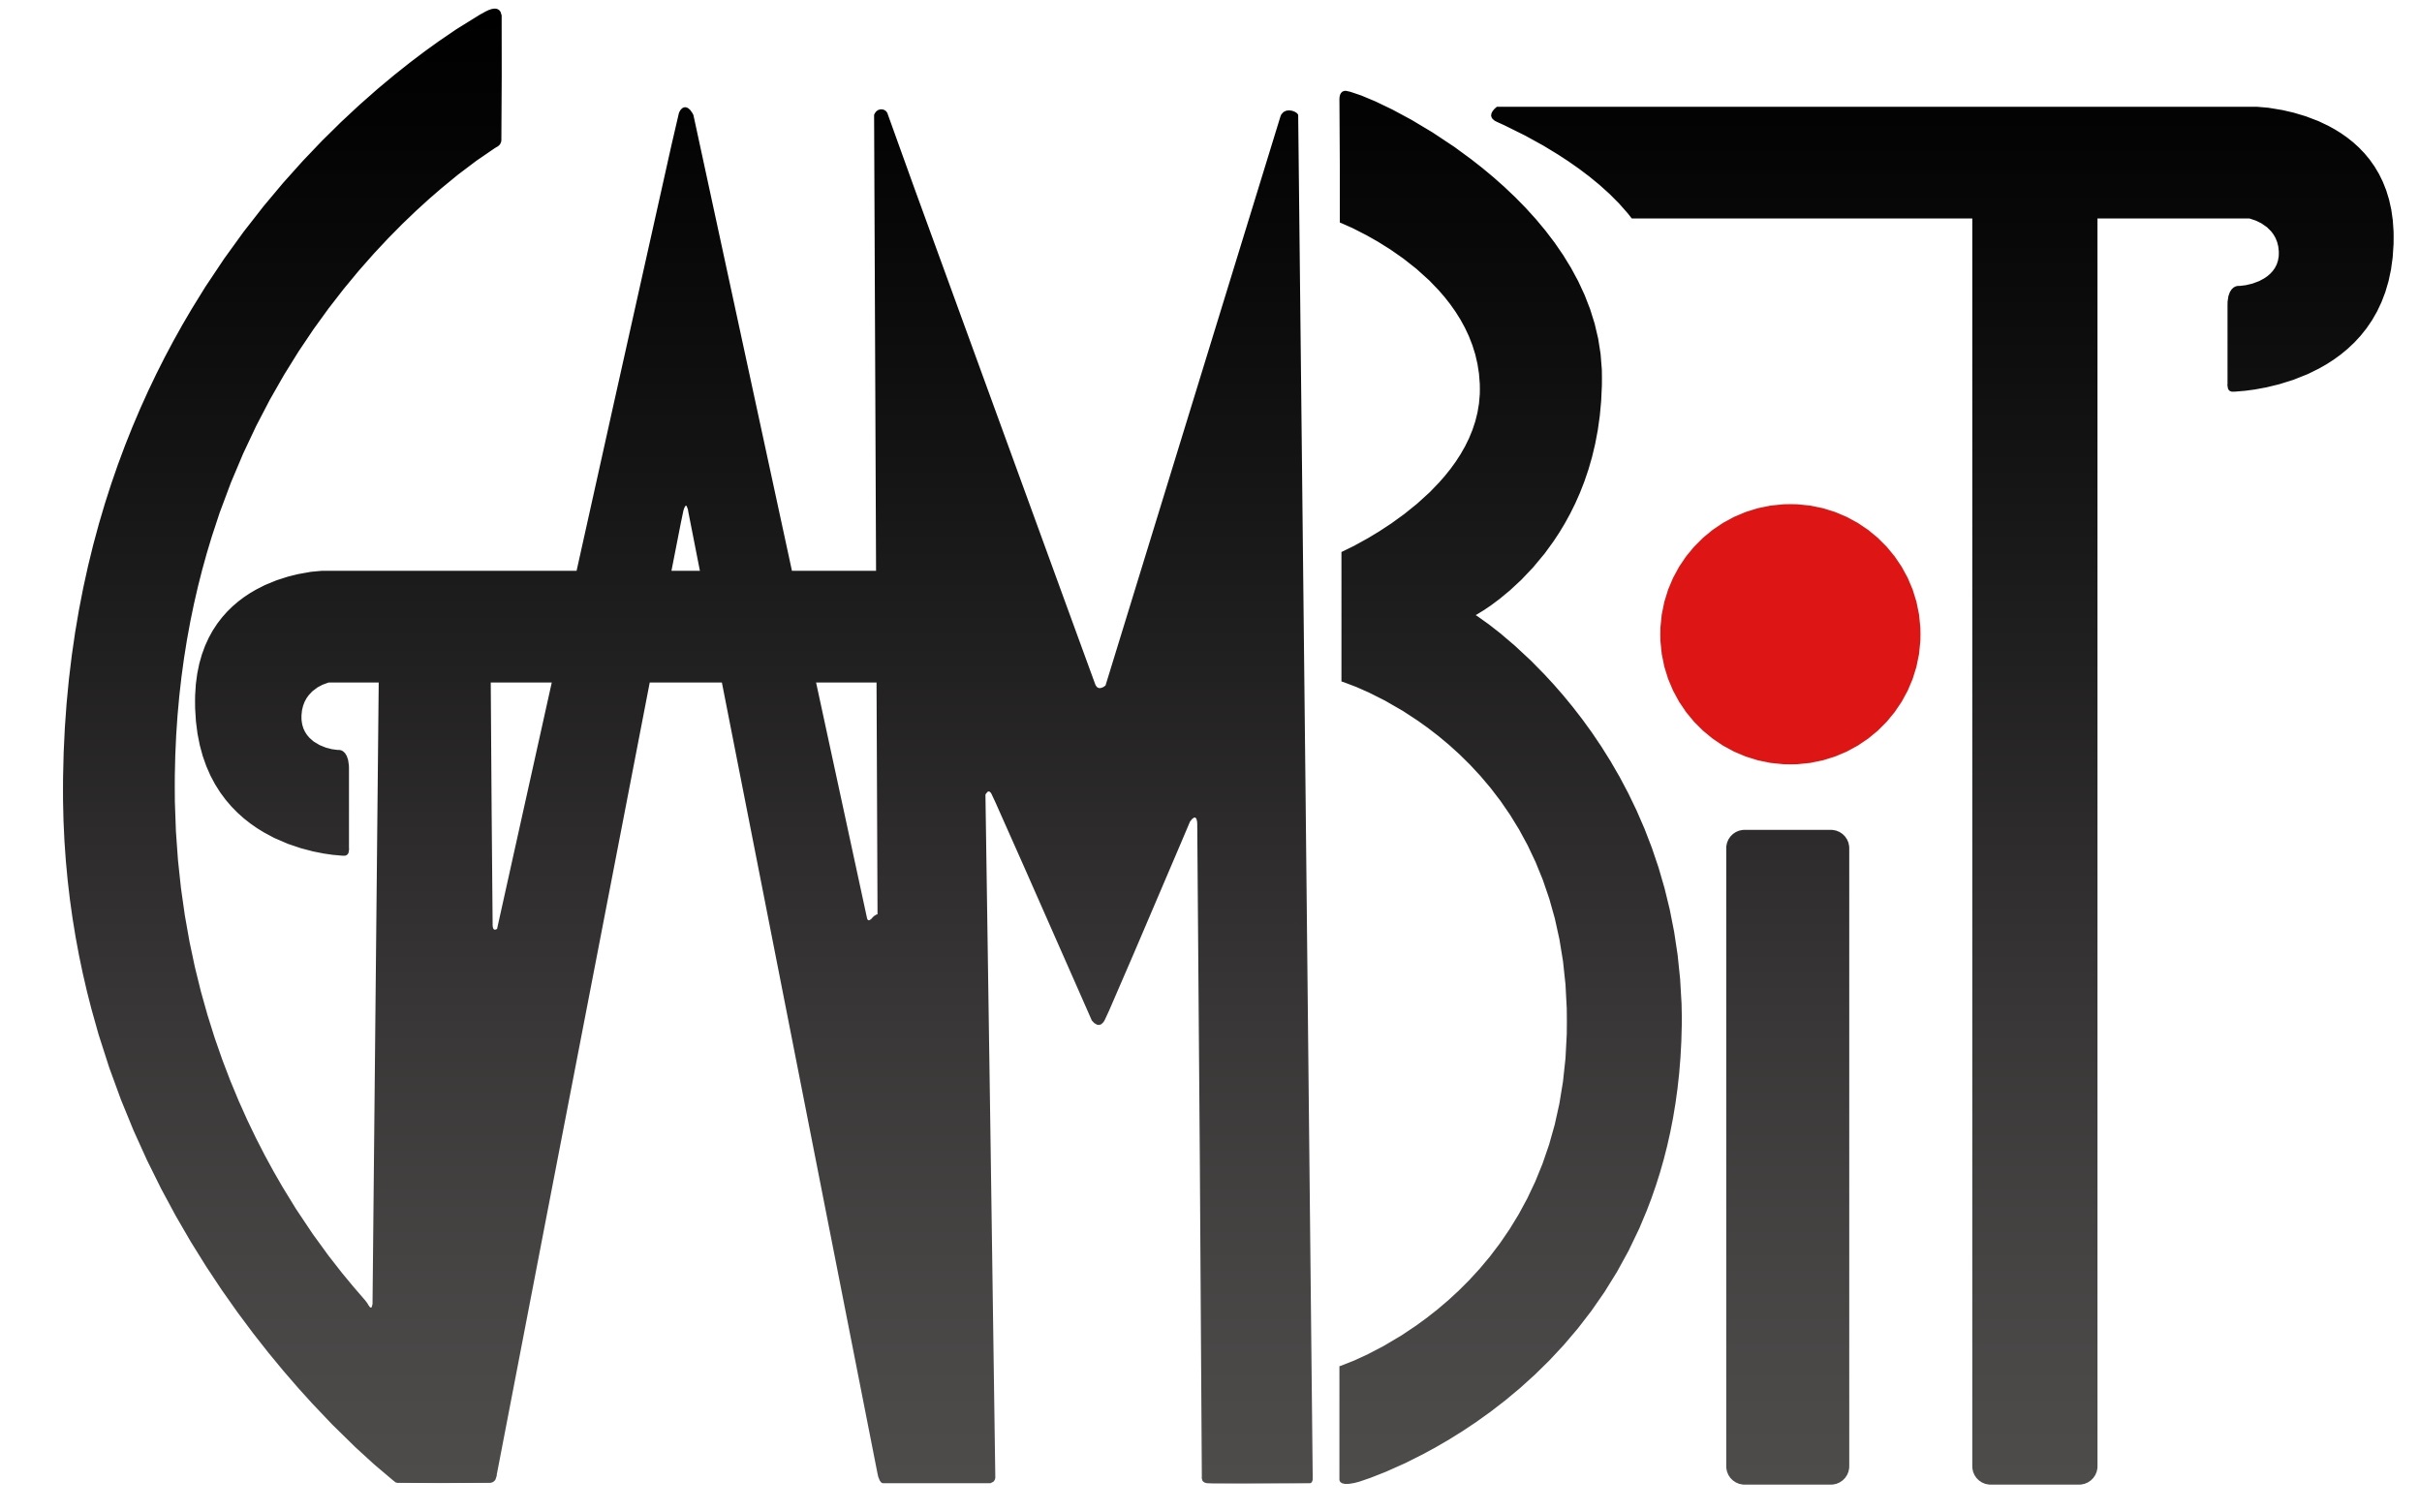 GAMBIT Logo.jpg 3be4c9d65704e325164ee3784f5a7cf7